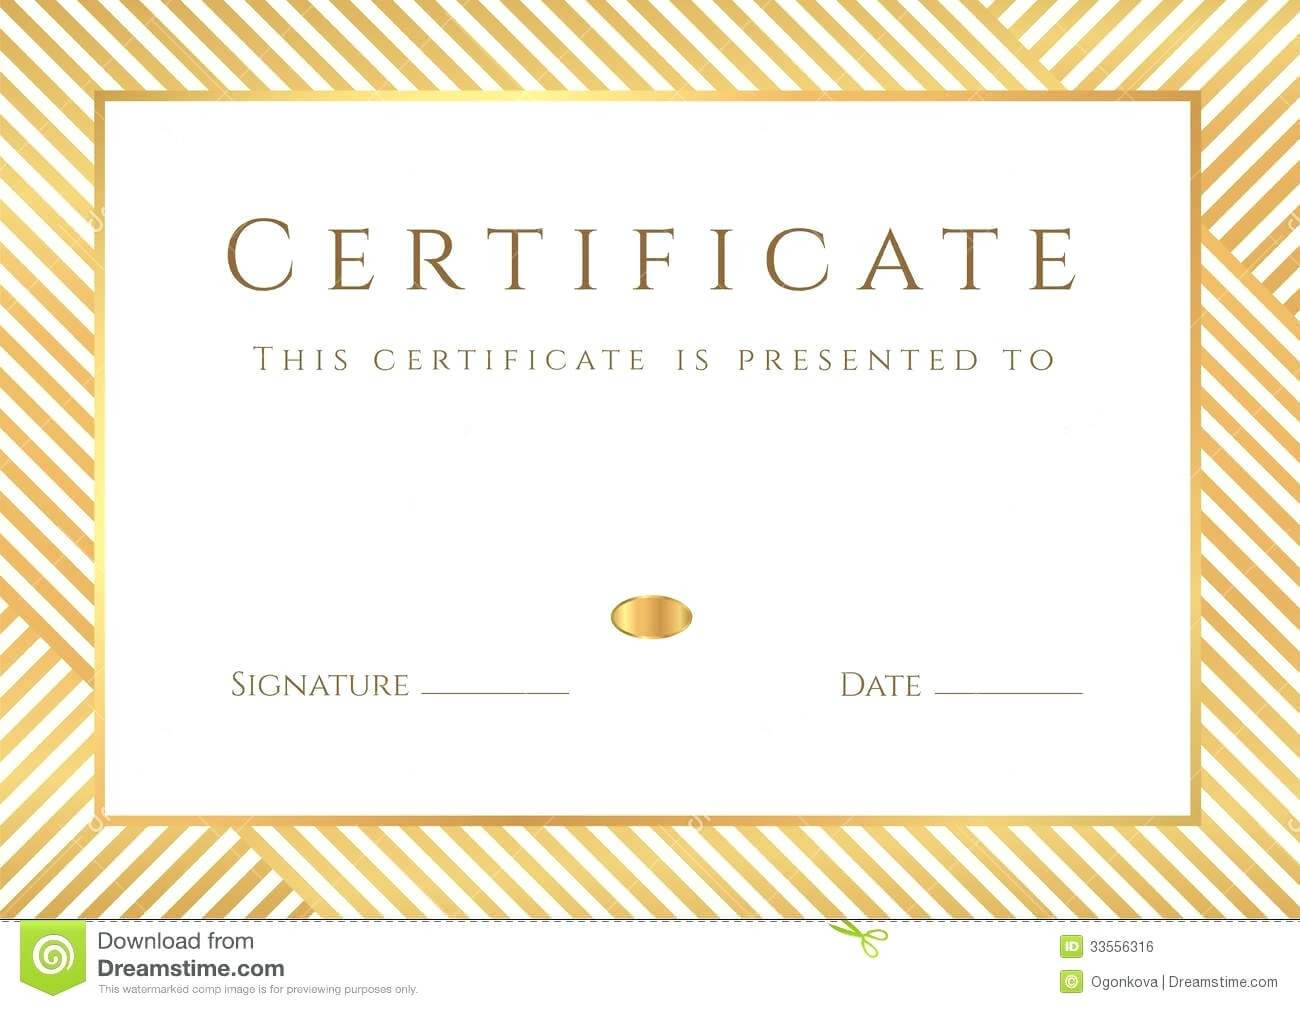 Superlative Certificate Template | Lera Mera With Superlative Certificate Template